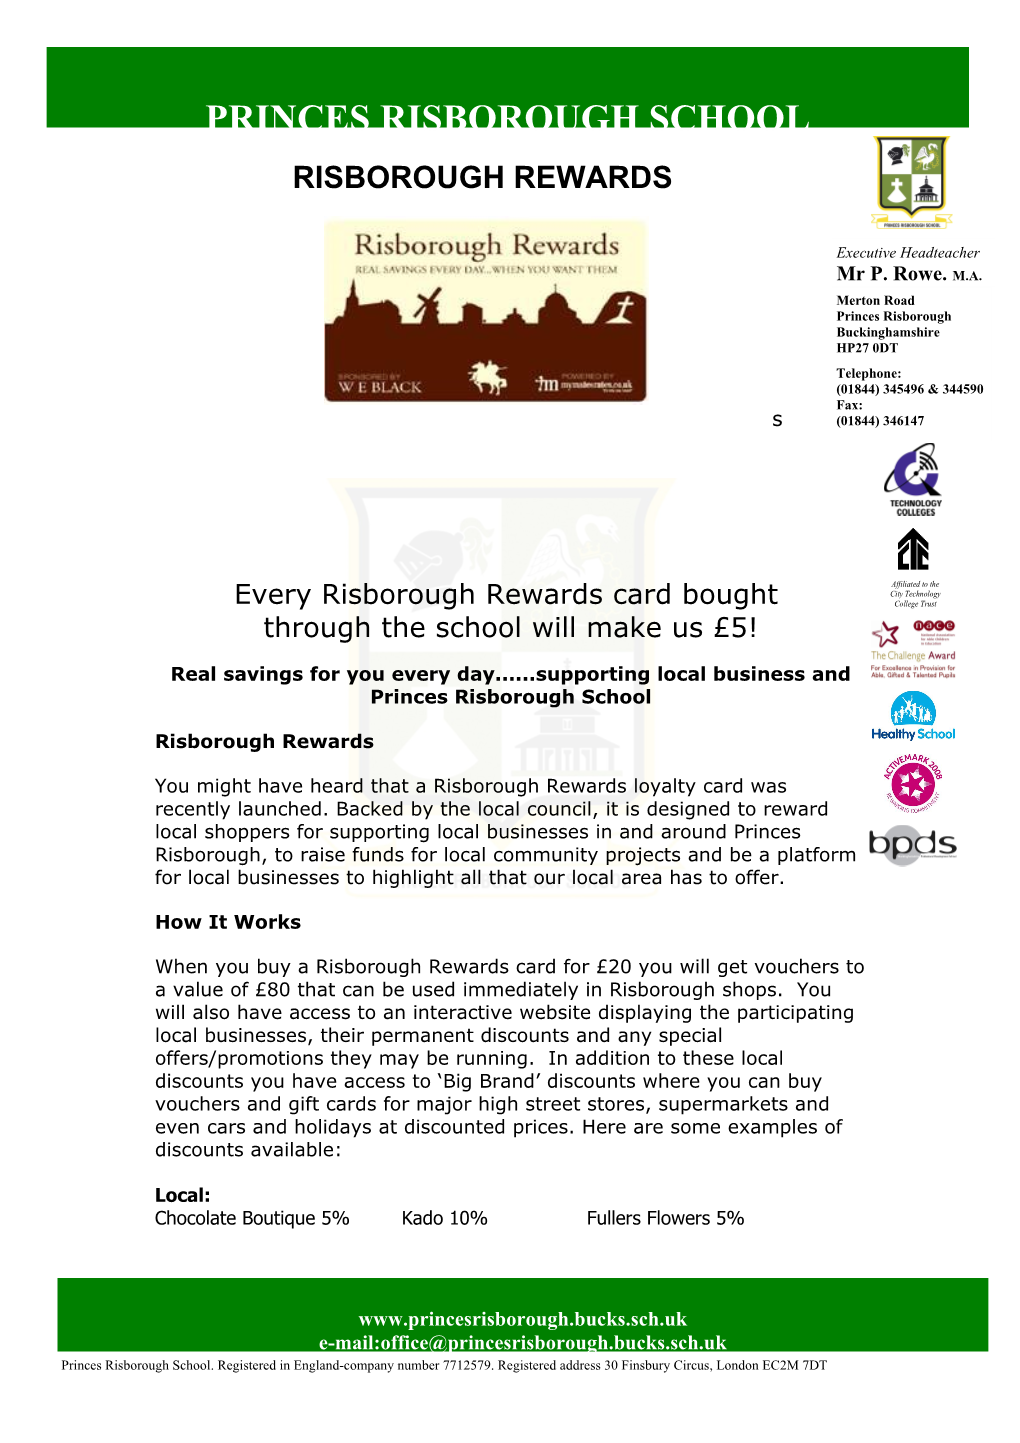 Risborough Rewards